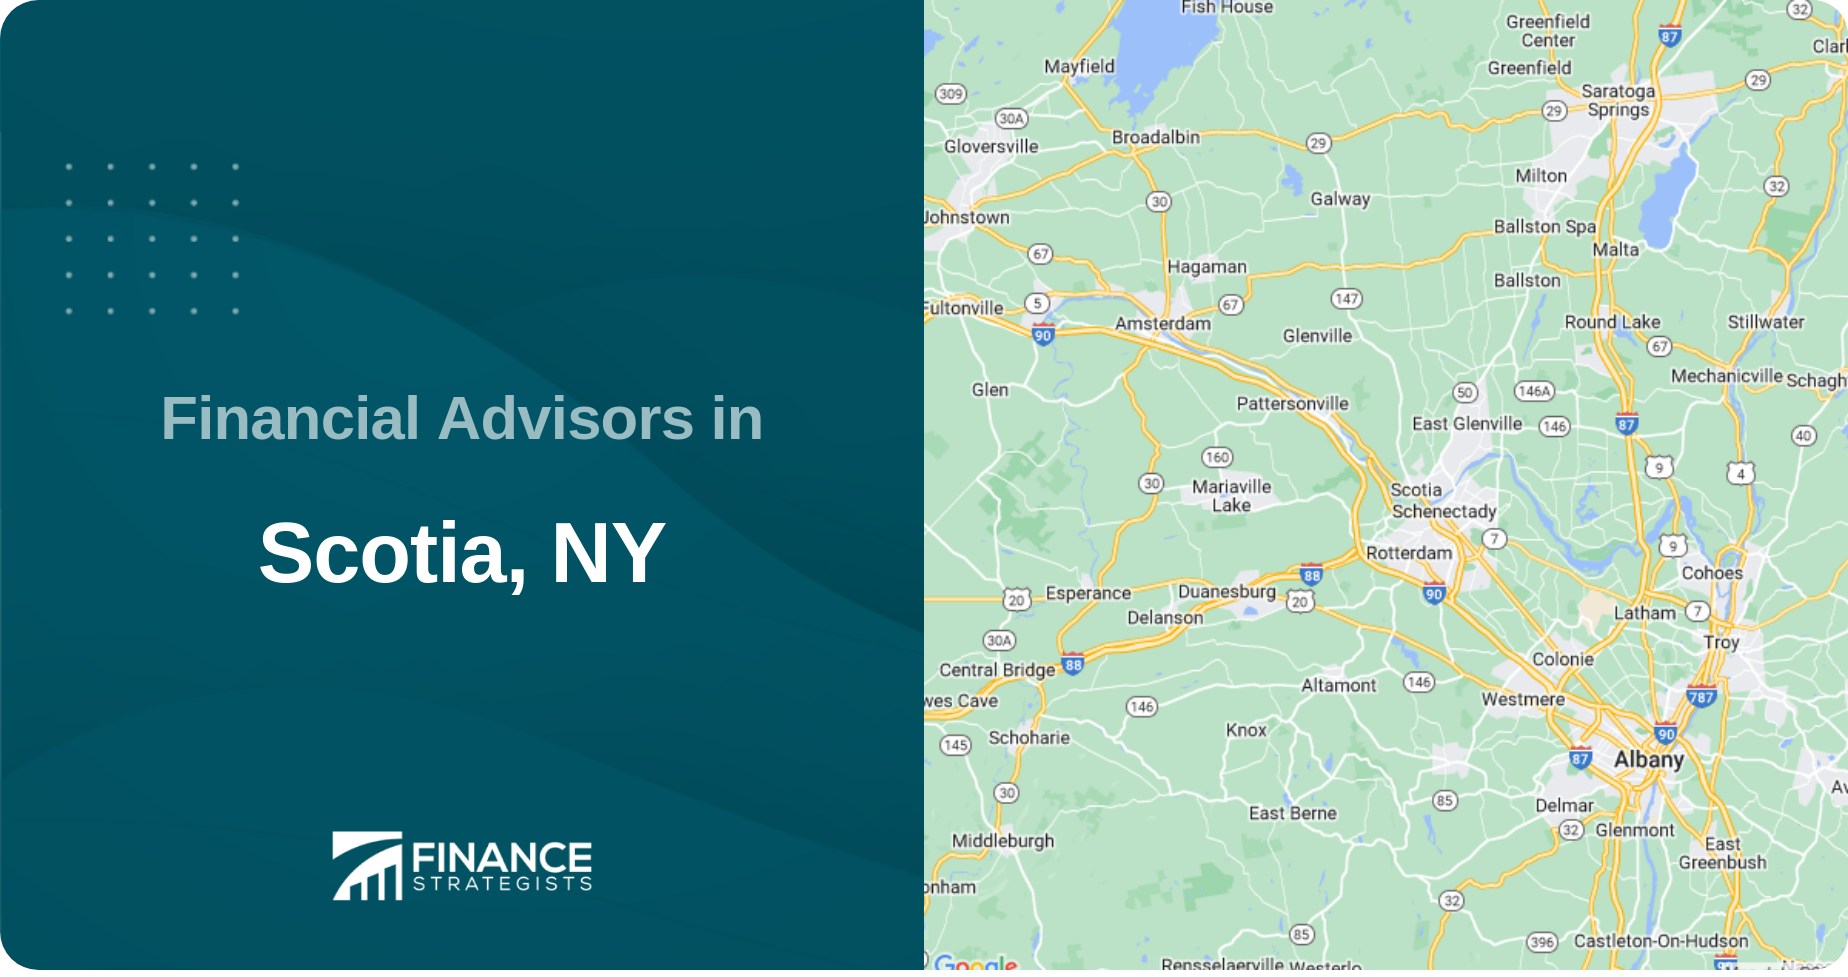 Financial Advisors in Scotia, NY